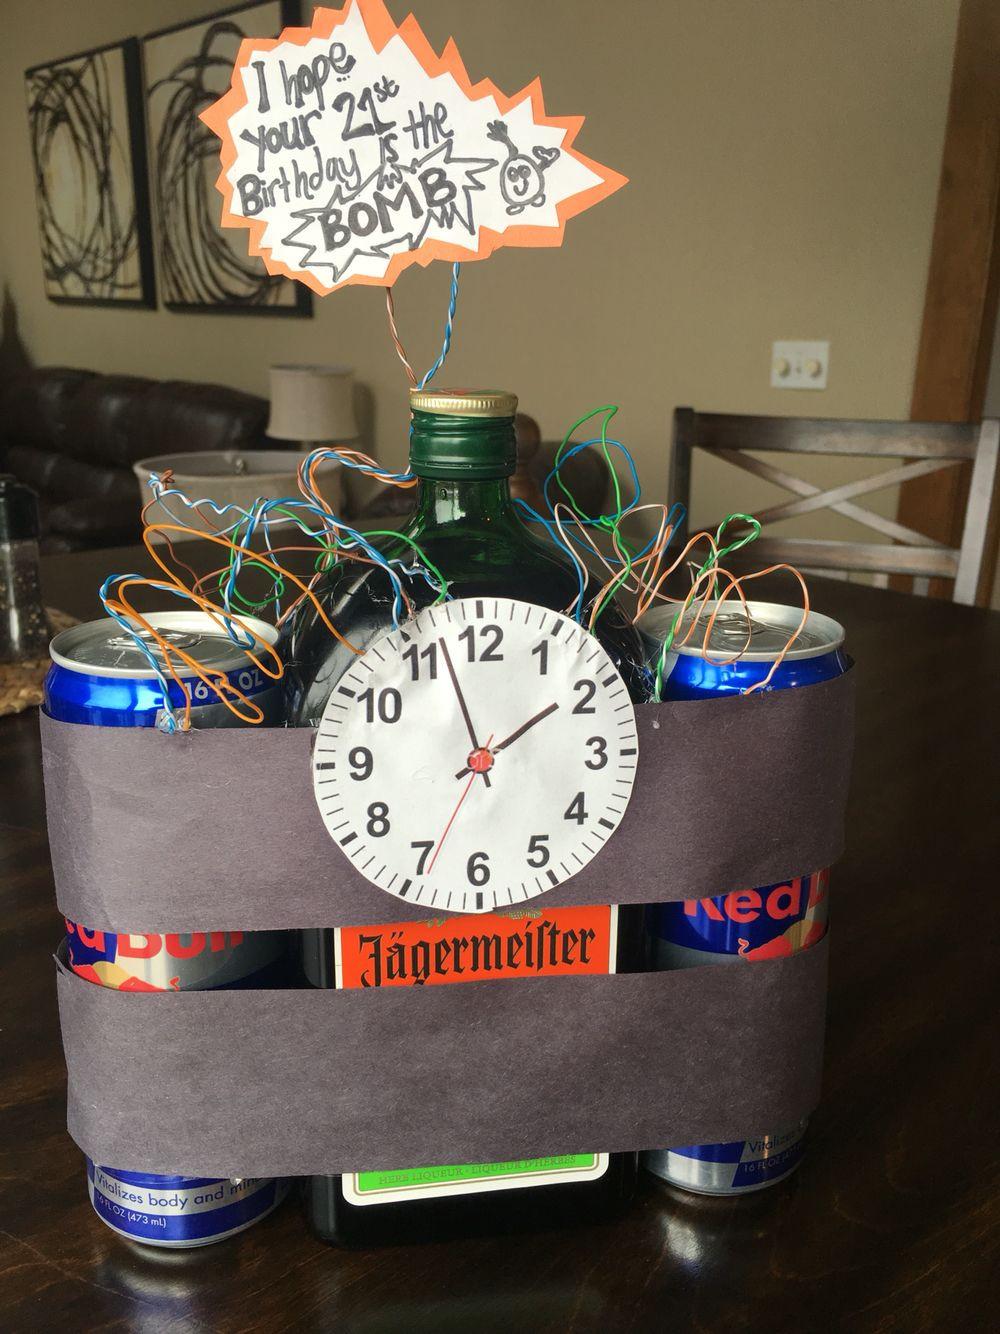 Birthday Gift Ideas For A Boyfriend
 Boyfriends 21st birthday idea Jäger s Creative